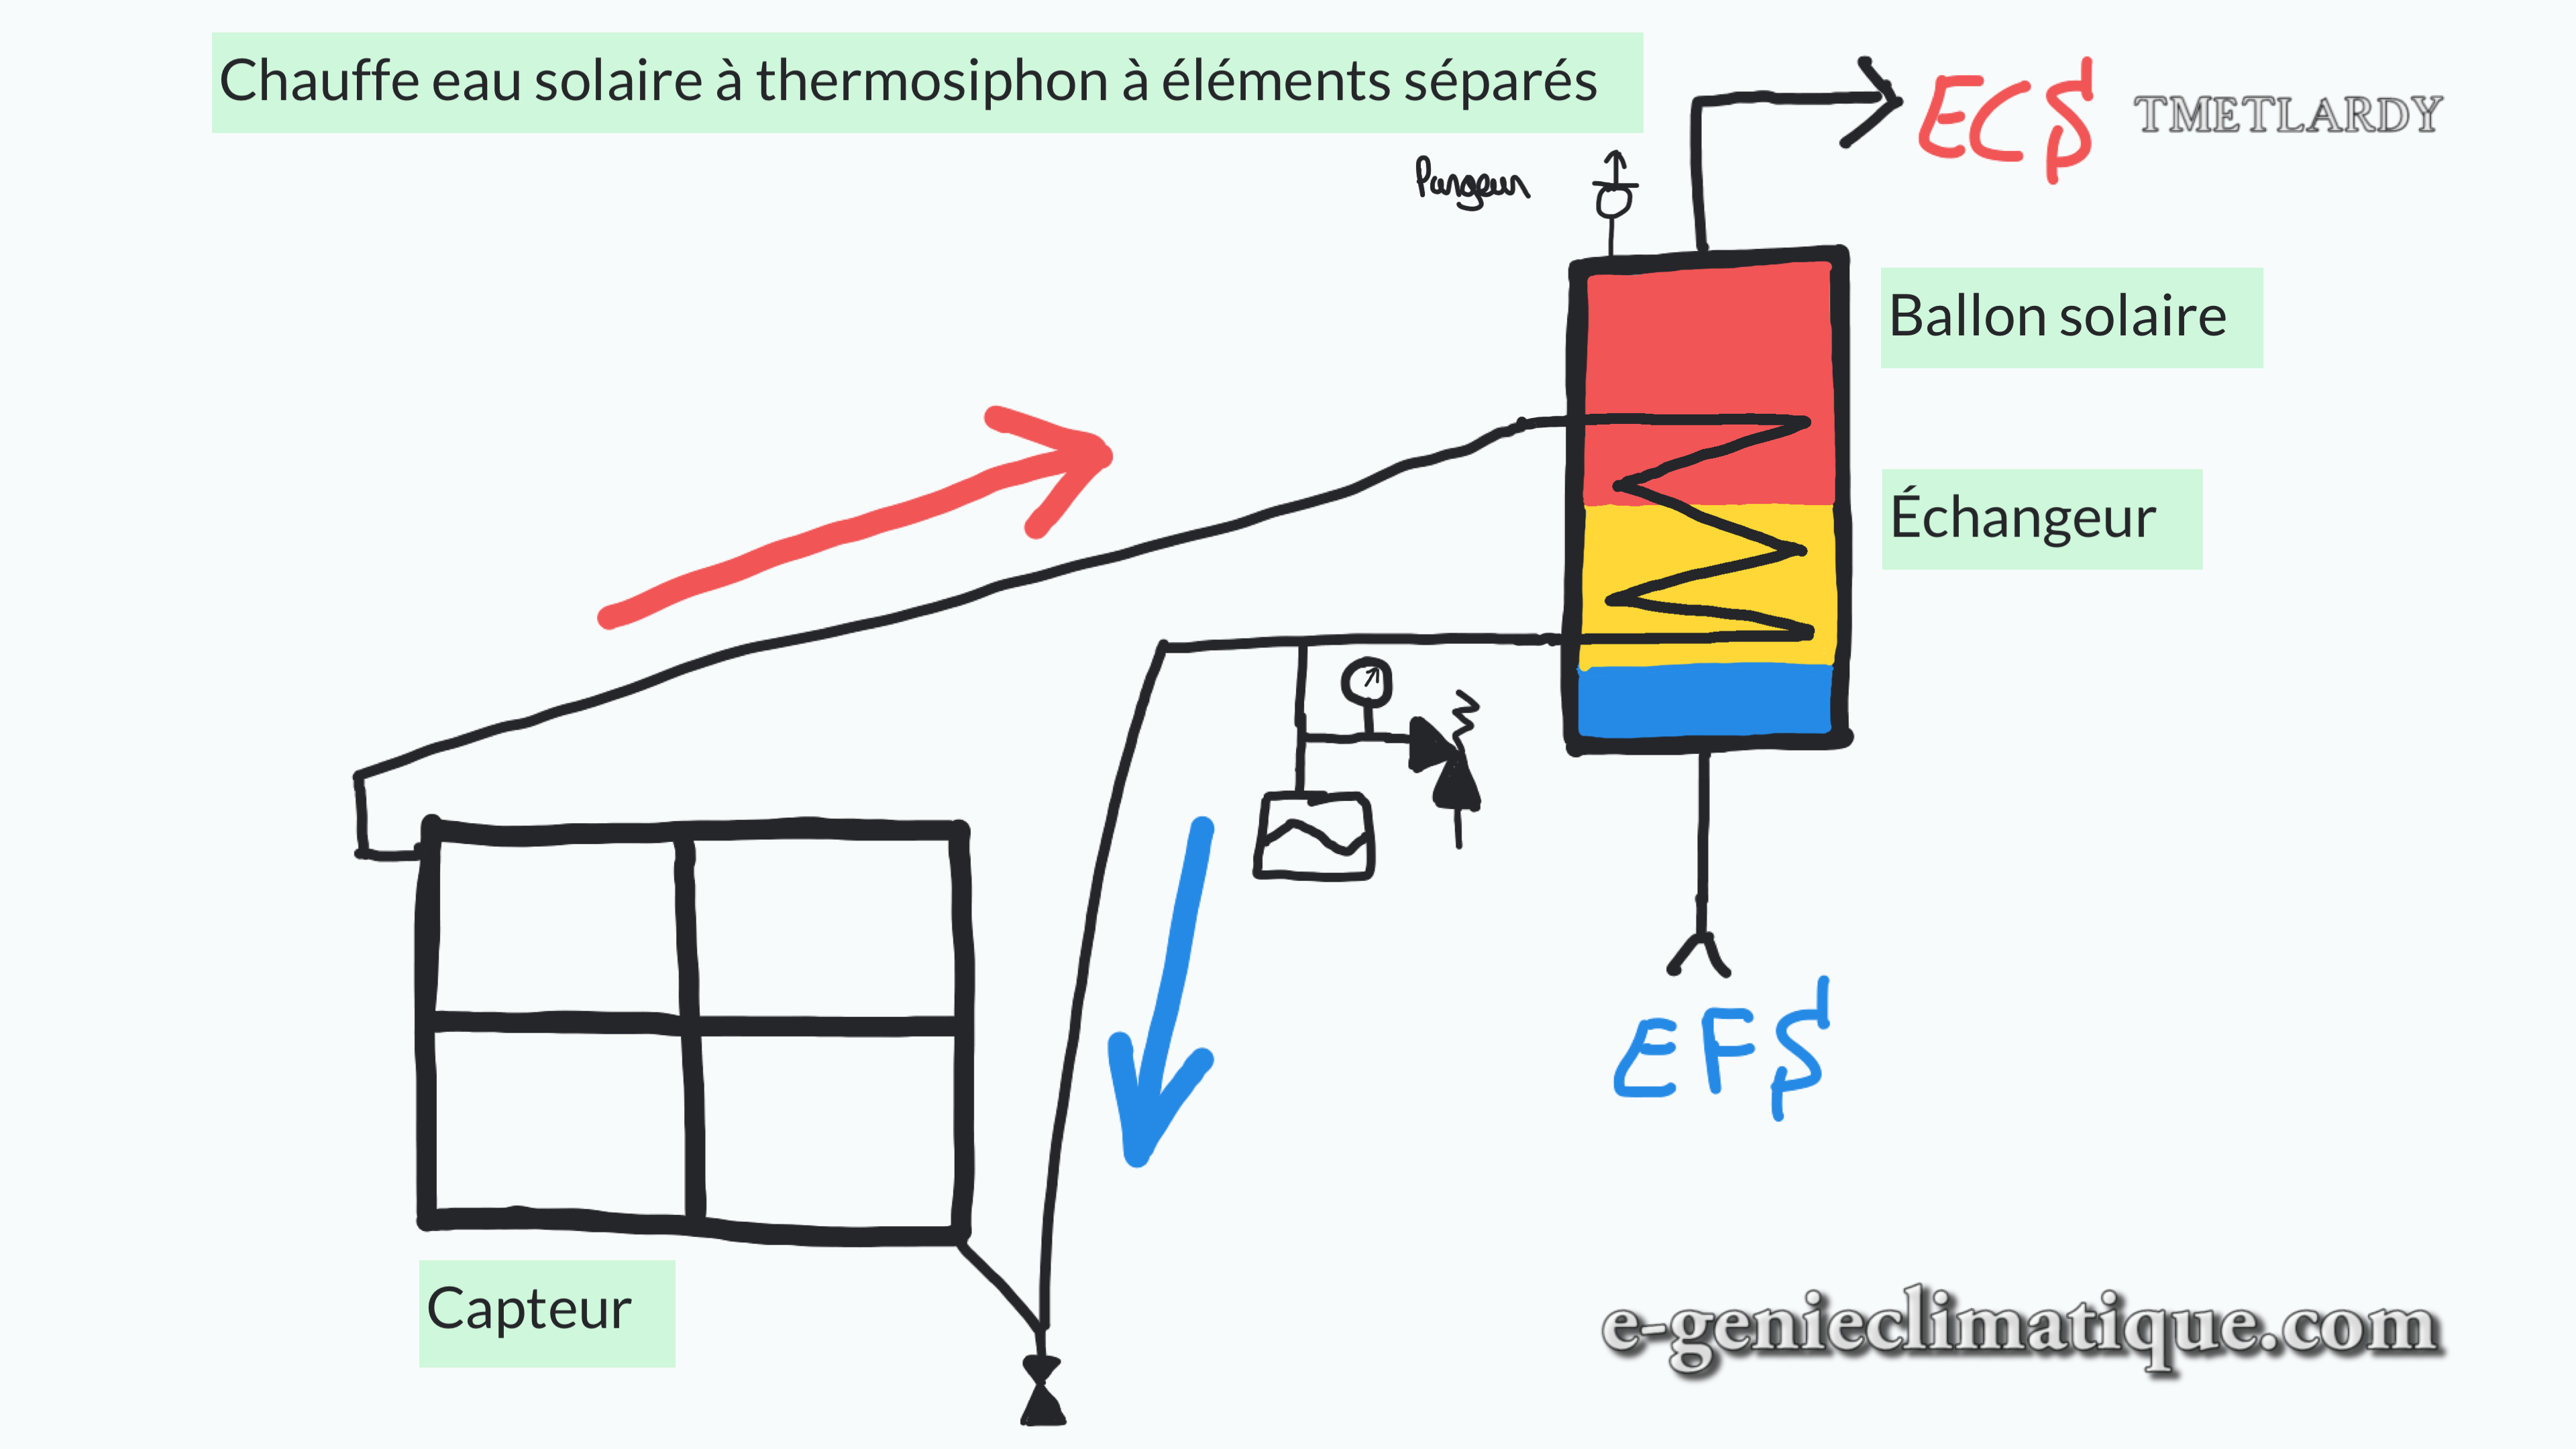 chauffe-eau-solaire-thermosiphon-a-elements-separes-schema-de-principe